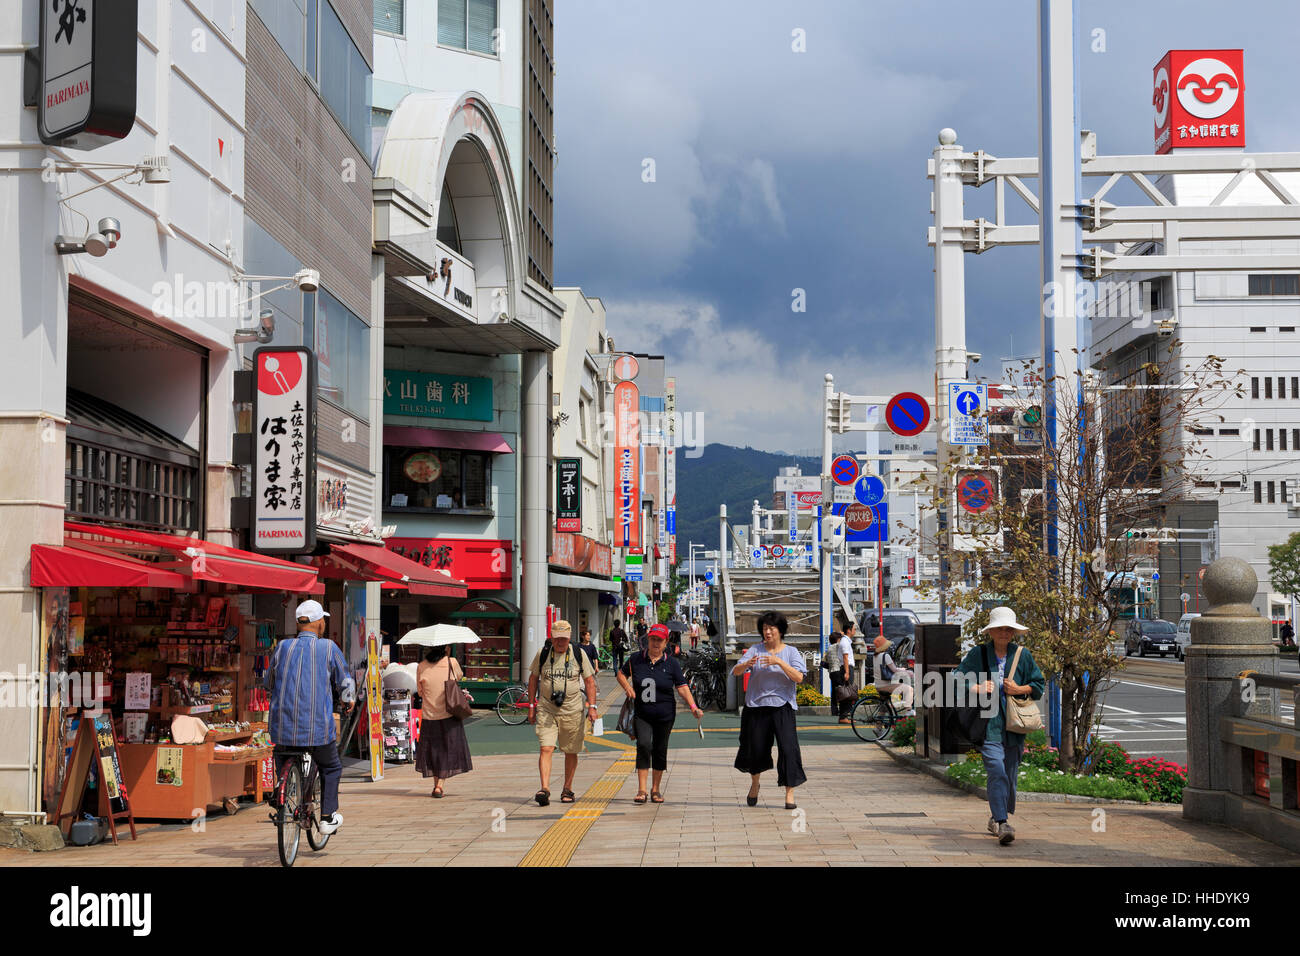 La ville de Kochi, l'île de Shikoku, Japon Banque D'Images